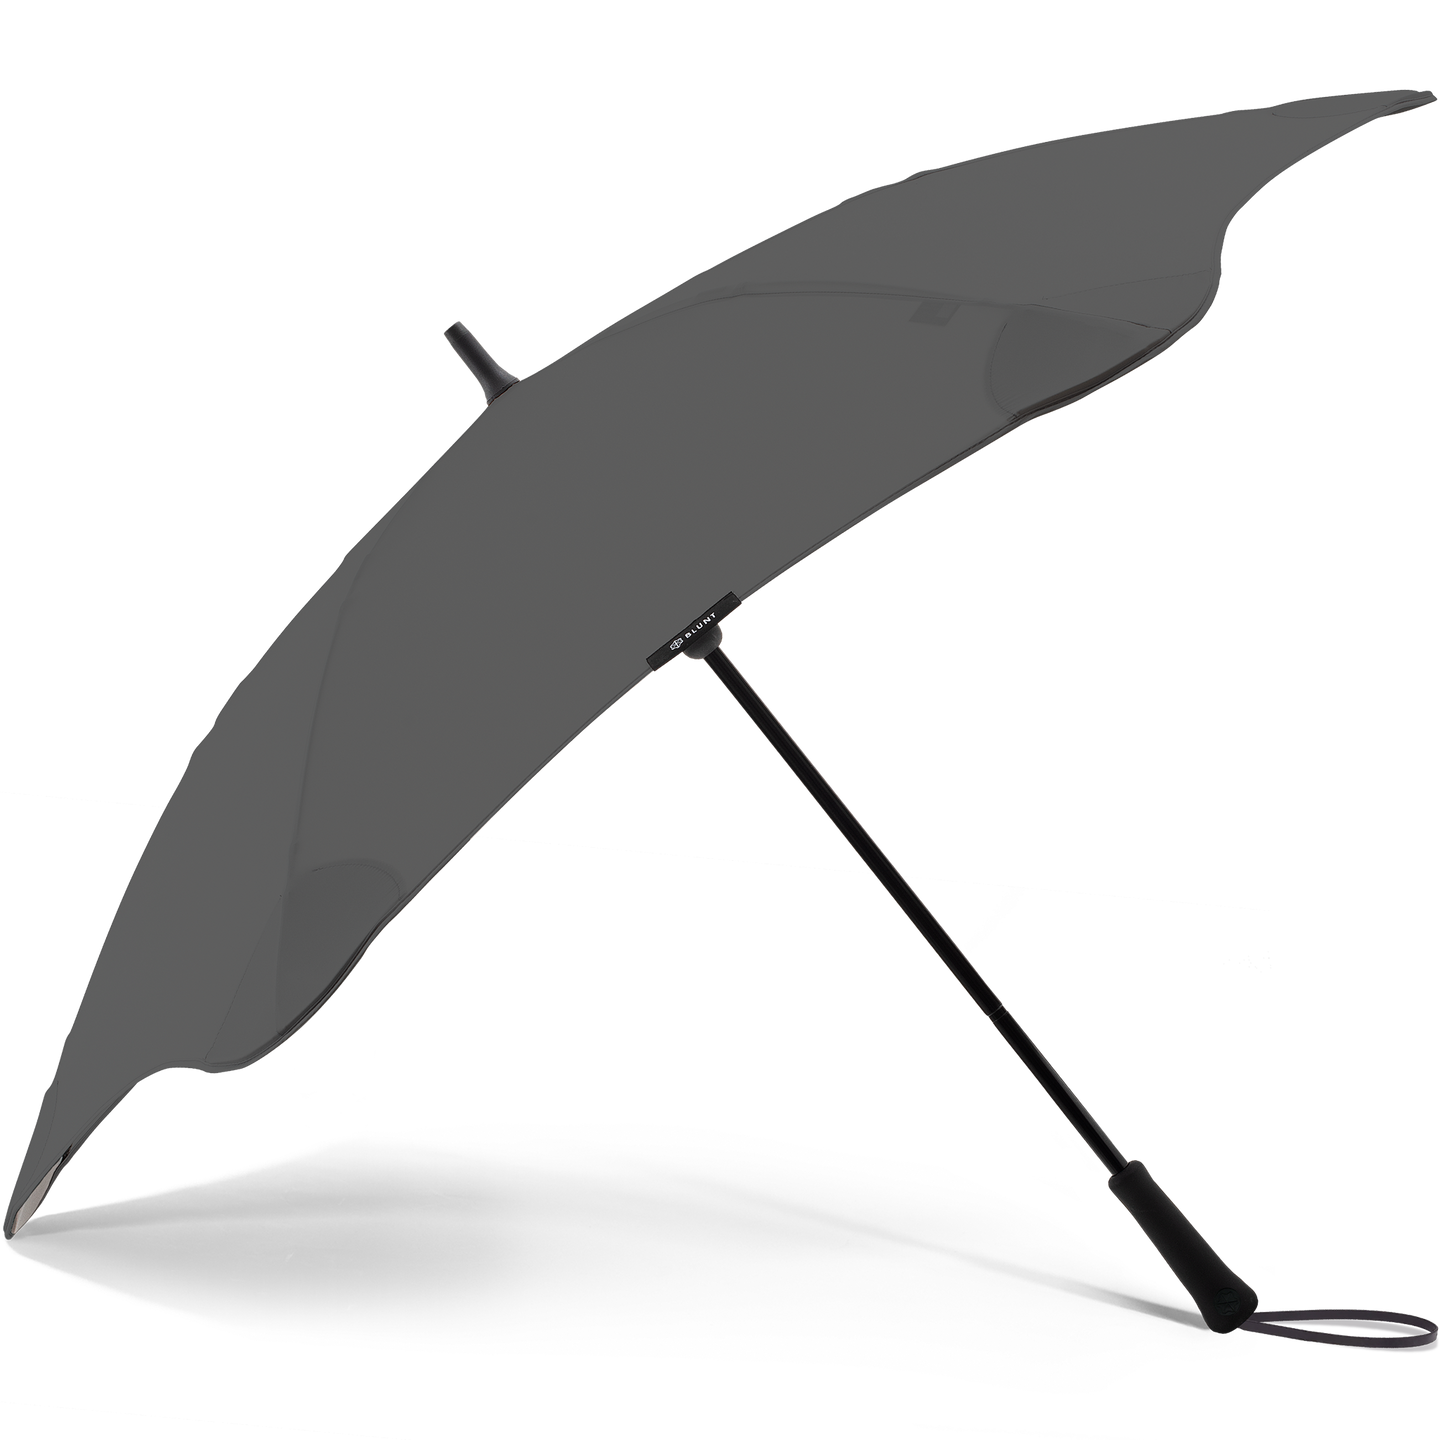 2020 Charcoal Exec Blunt Umbrella Side View